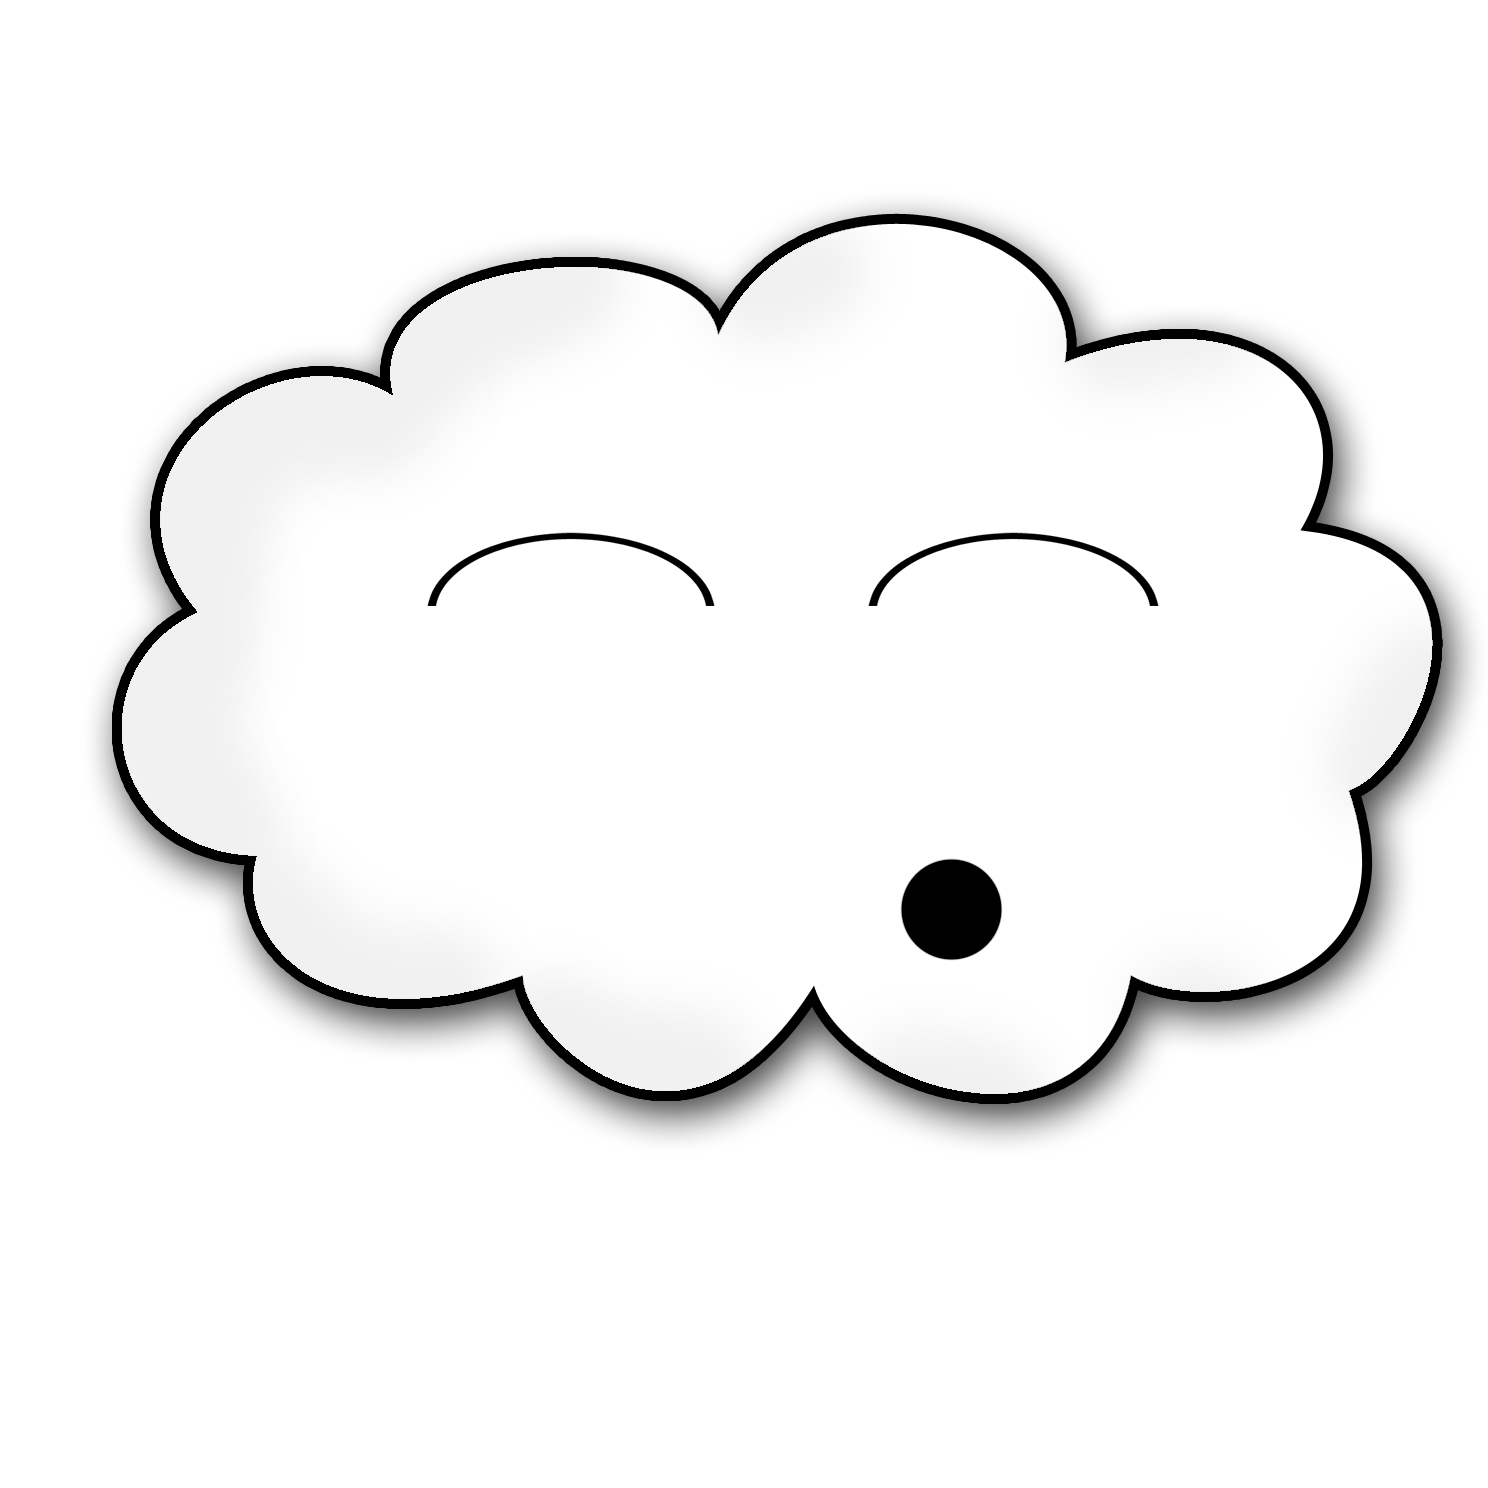 Cloud 3 image - vector clip art online, royalty free  public domain